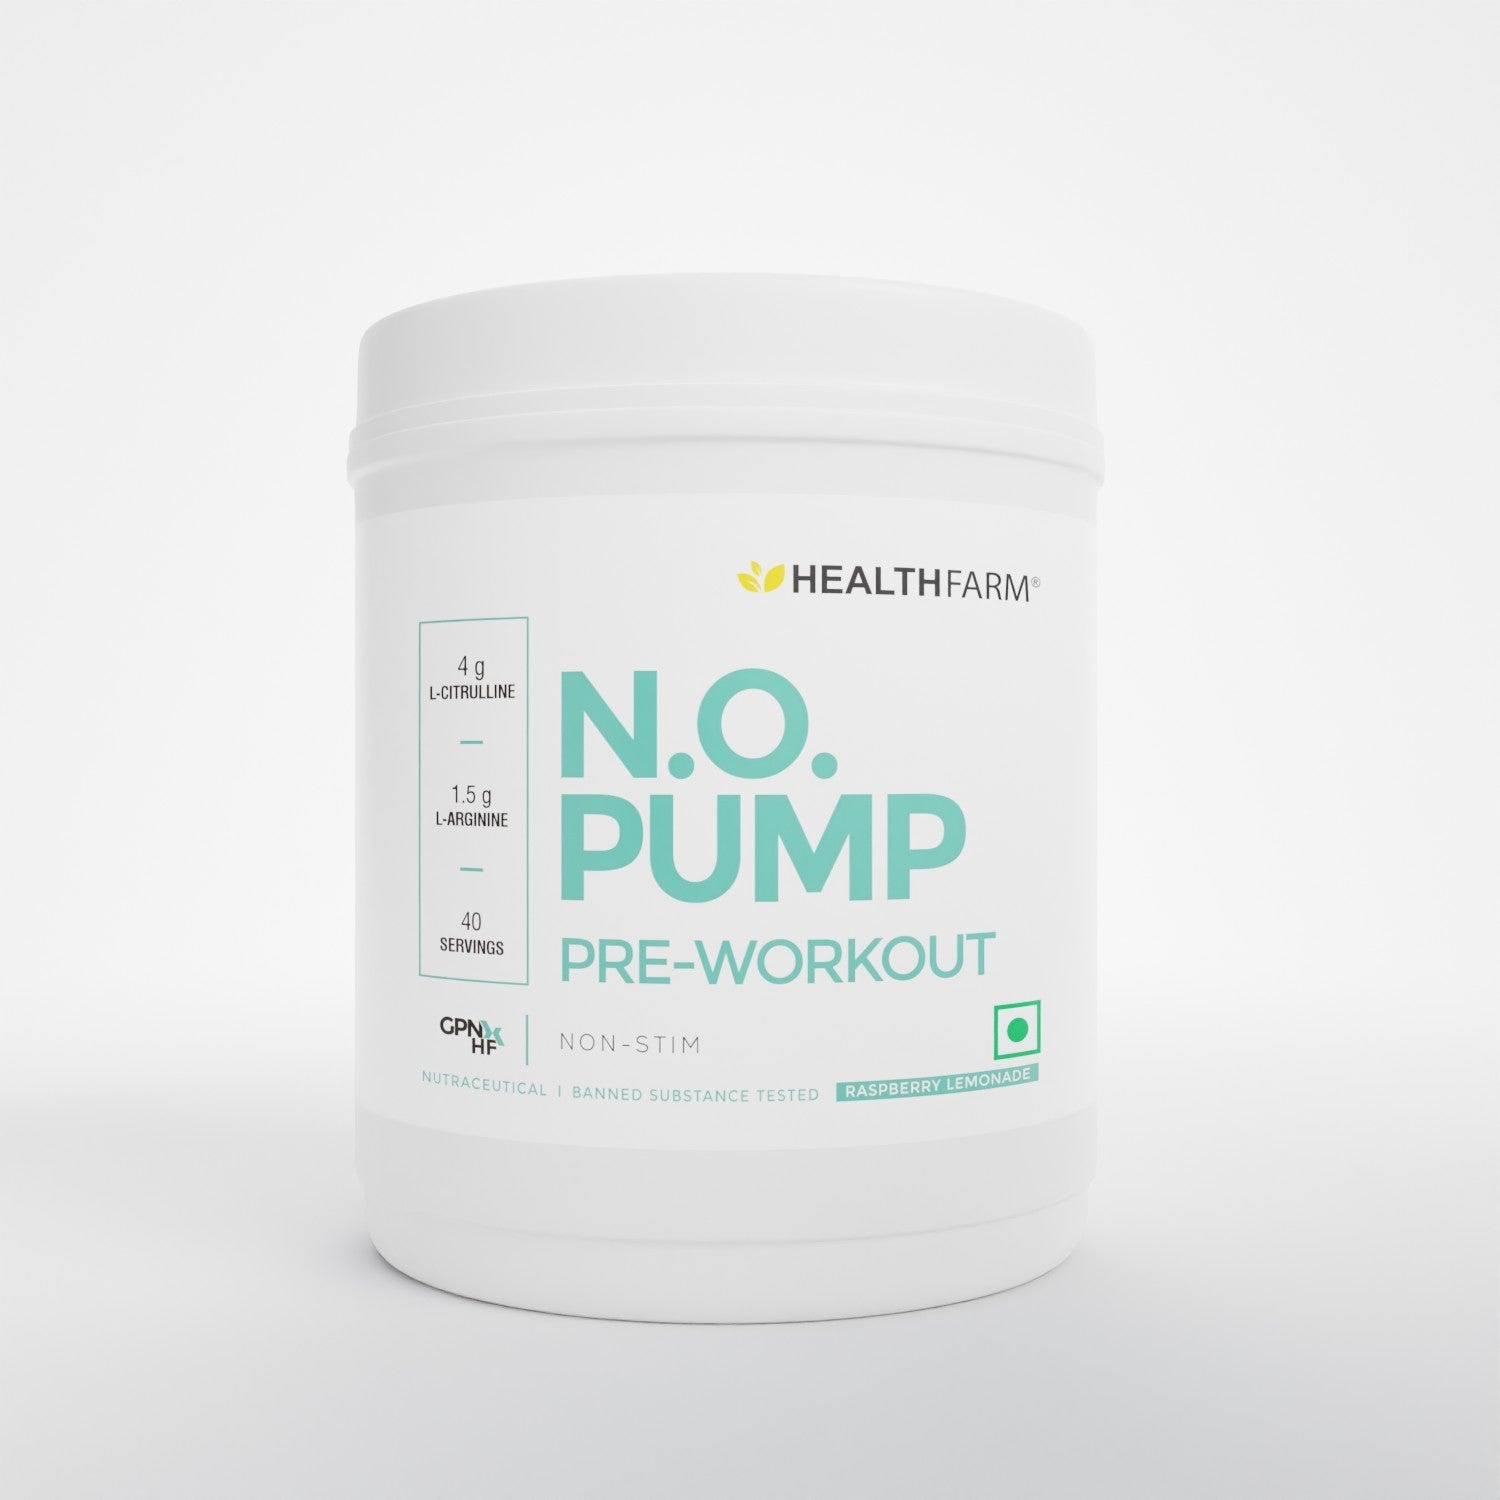 Healthfarm N.O. PUMP Pre-Workout(Non Stim)